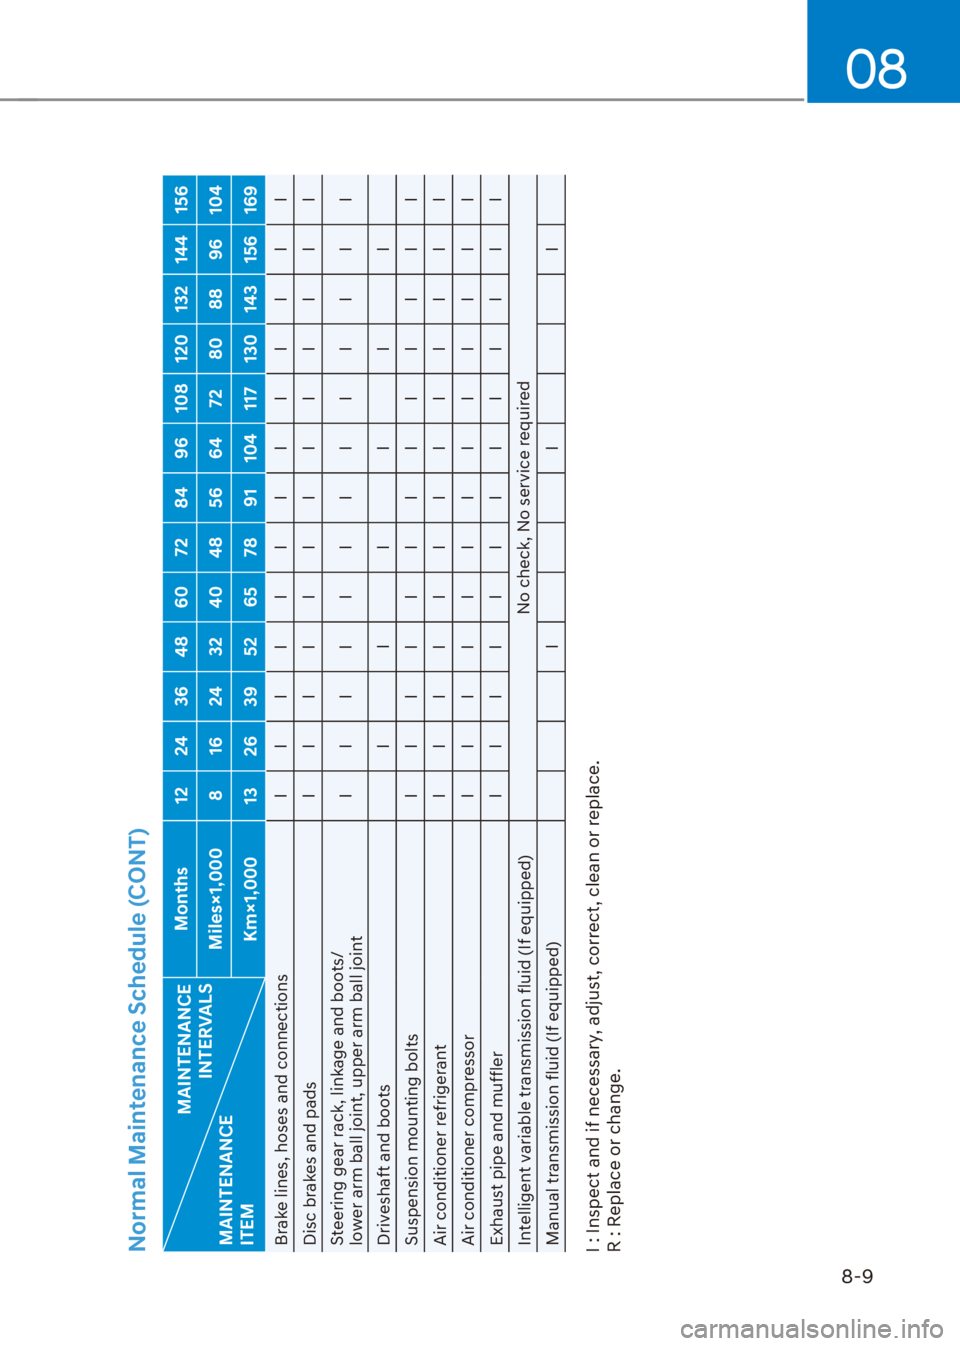 HYUNDAI VENUE 2022  Owners Manual 08
8-9
Normal Maintenance Schedule (CONT)
MAINTENANCE  
INTERVALS
MAINTENANCE  
ITEMMonths 12 24 36 48 60 72 84 96 108 120 132 144 156
Miles×1,000 8 16 24 32 40 48 56 64 72 80 88 96 104
Km×1,000 13 